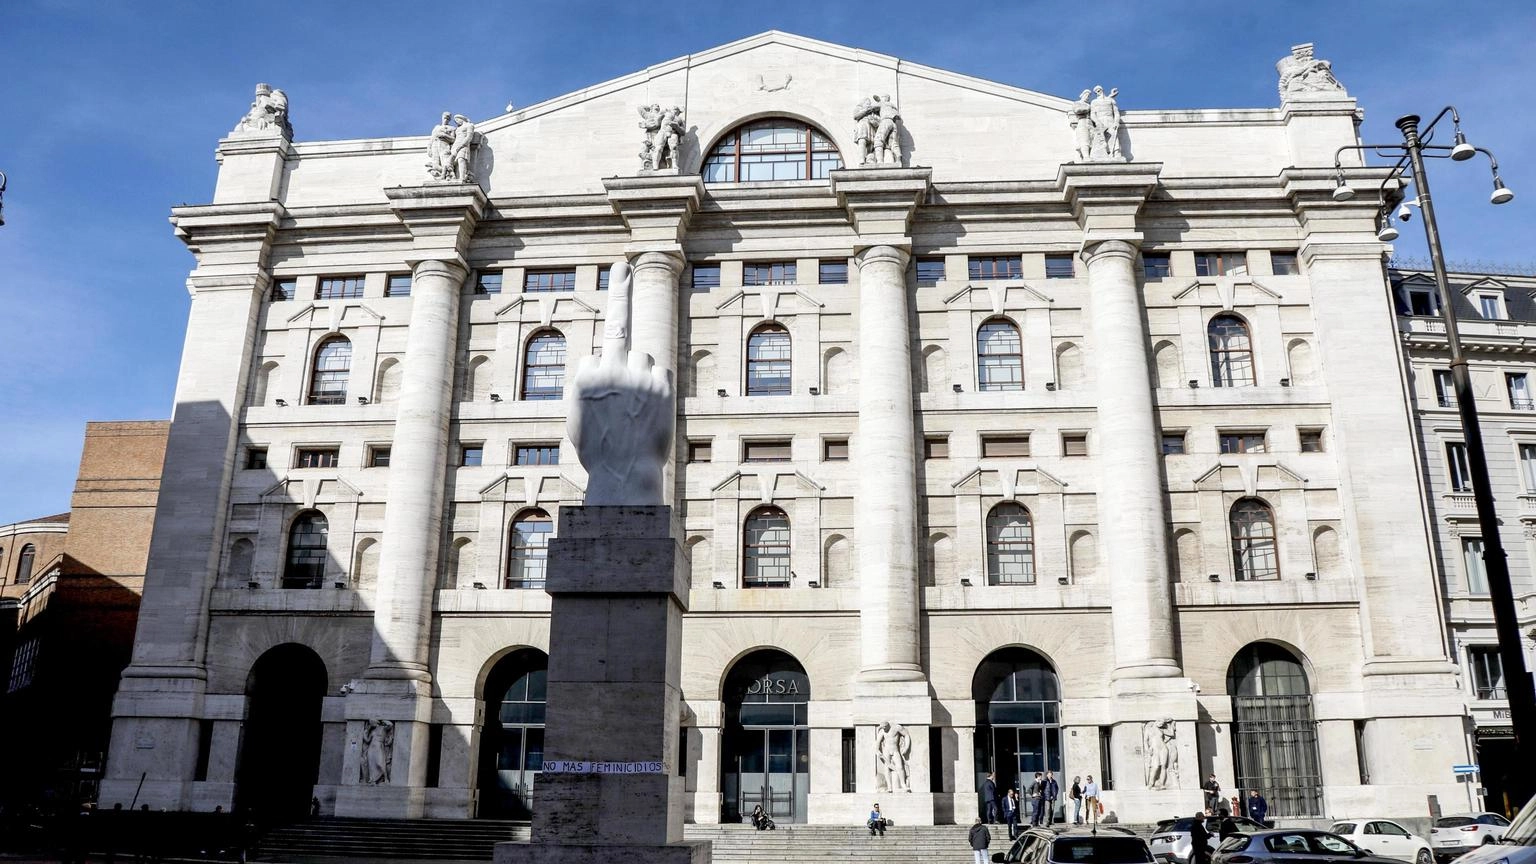 Borsa: Milano bene (+1,1%) con Unicredit, migliore in Europa